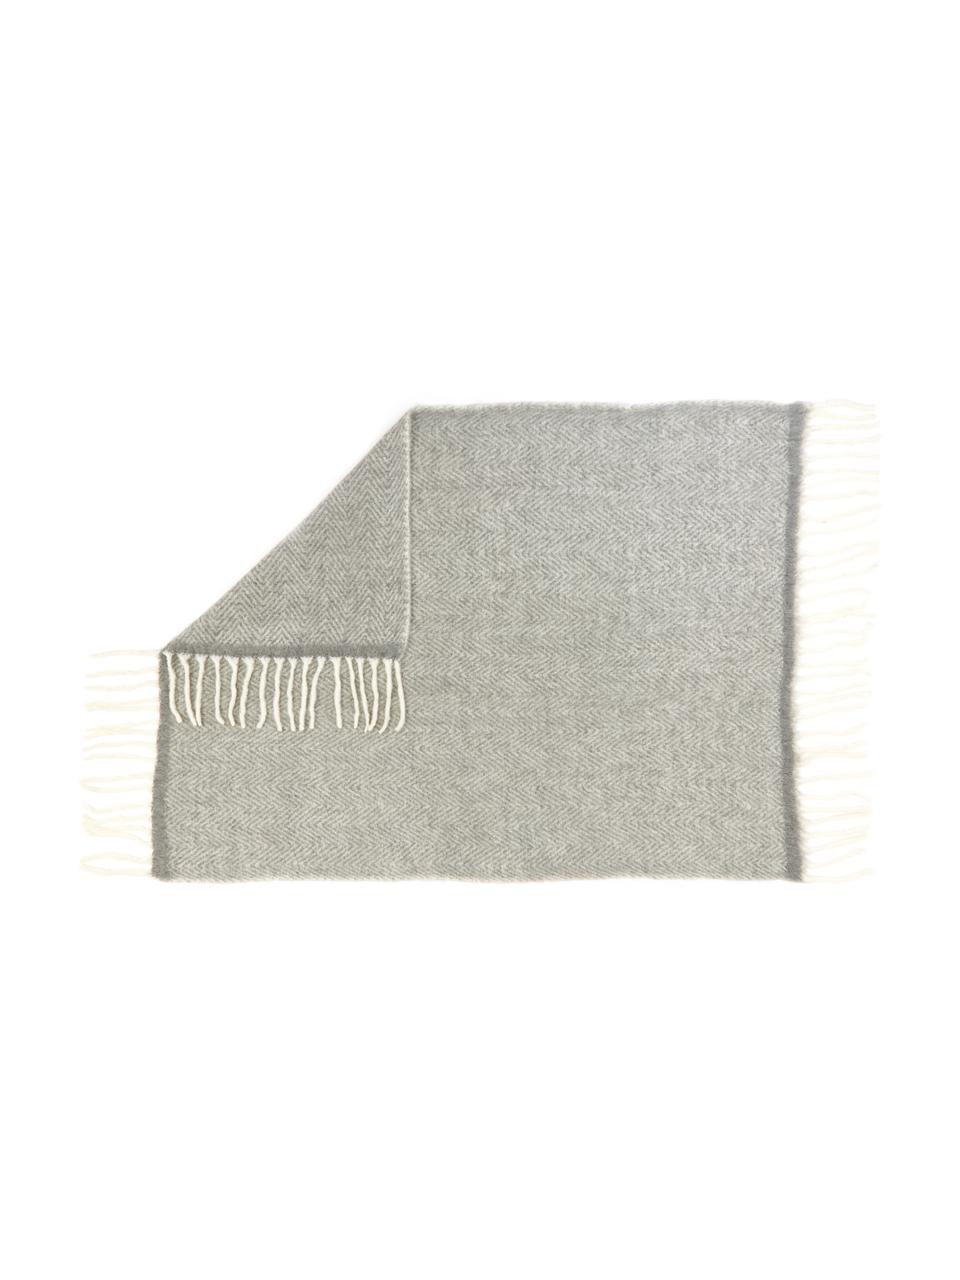 Woll-Decke Mathea mit Fransen in Grau, 60 % Wolle, 25 % Acryl, 15 % Nylon, Grau, L 170 x B 130 cm